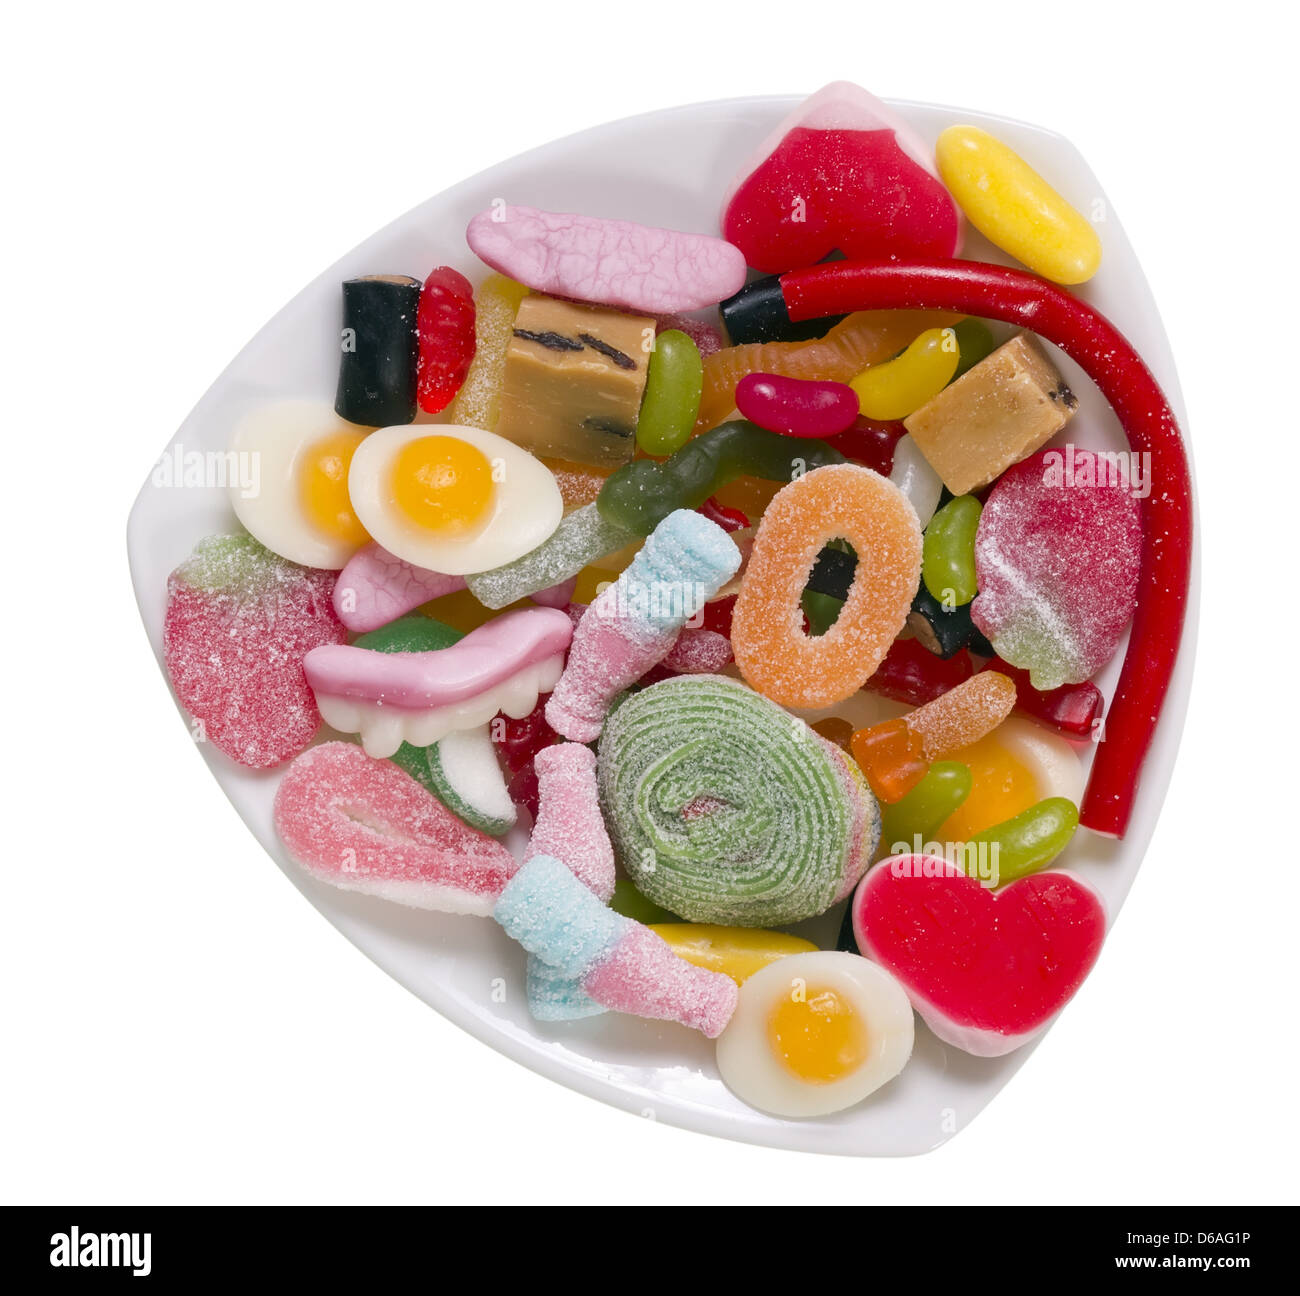 Gelatine-Süßigkeiten auf einem weißen Teller isoliert Stockfoto